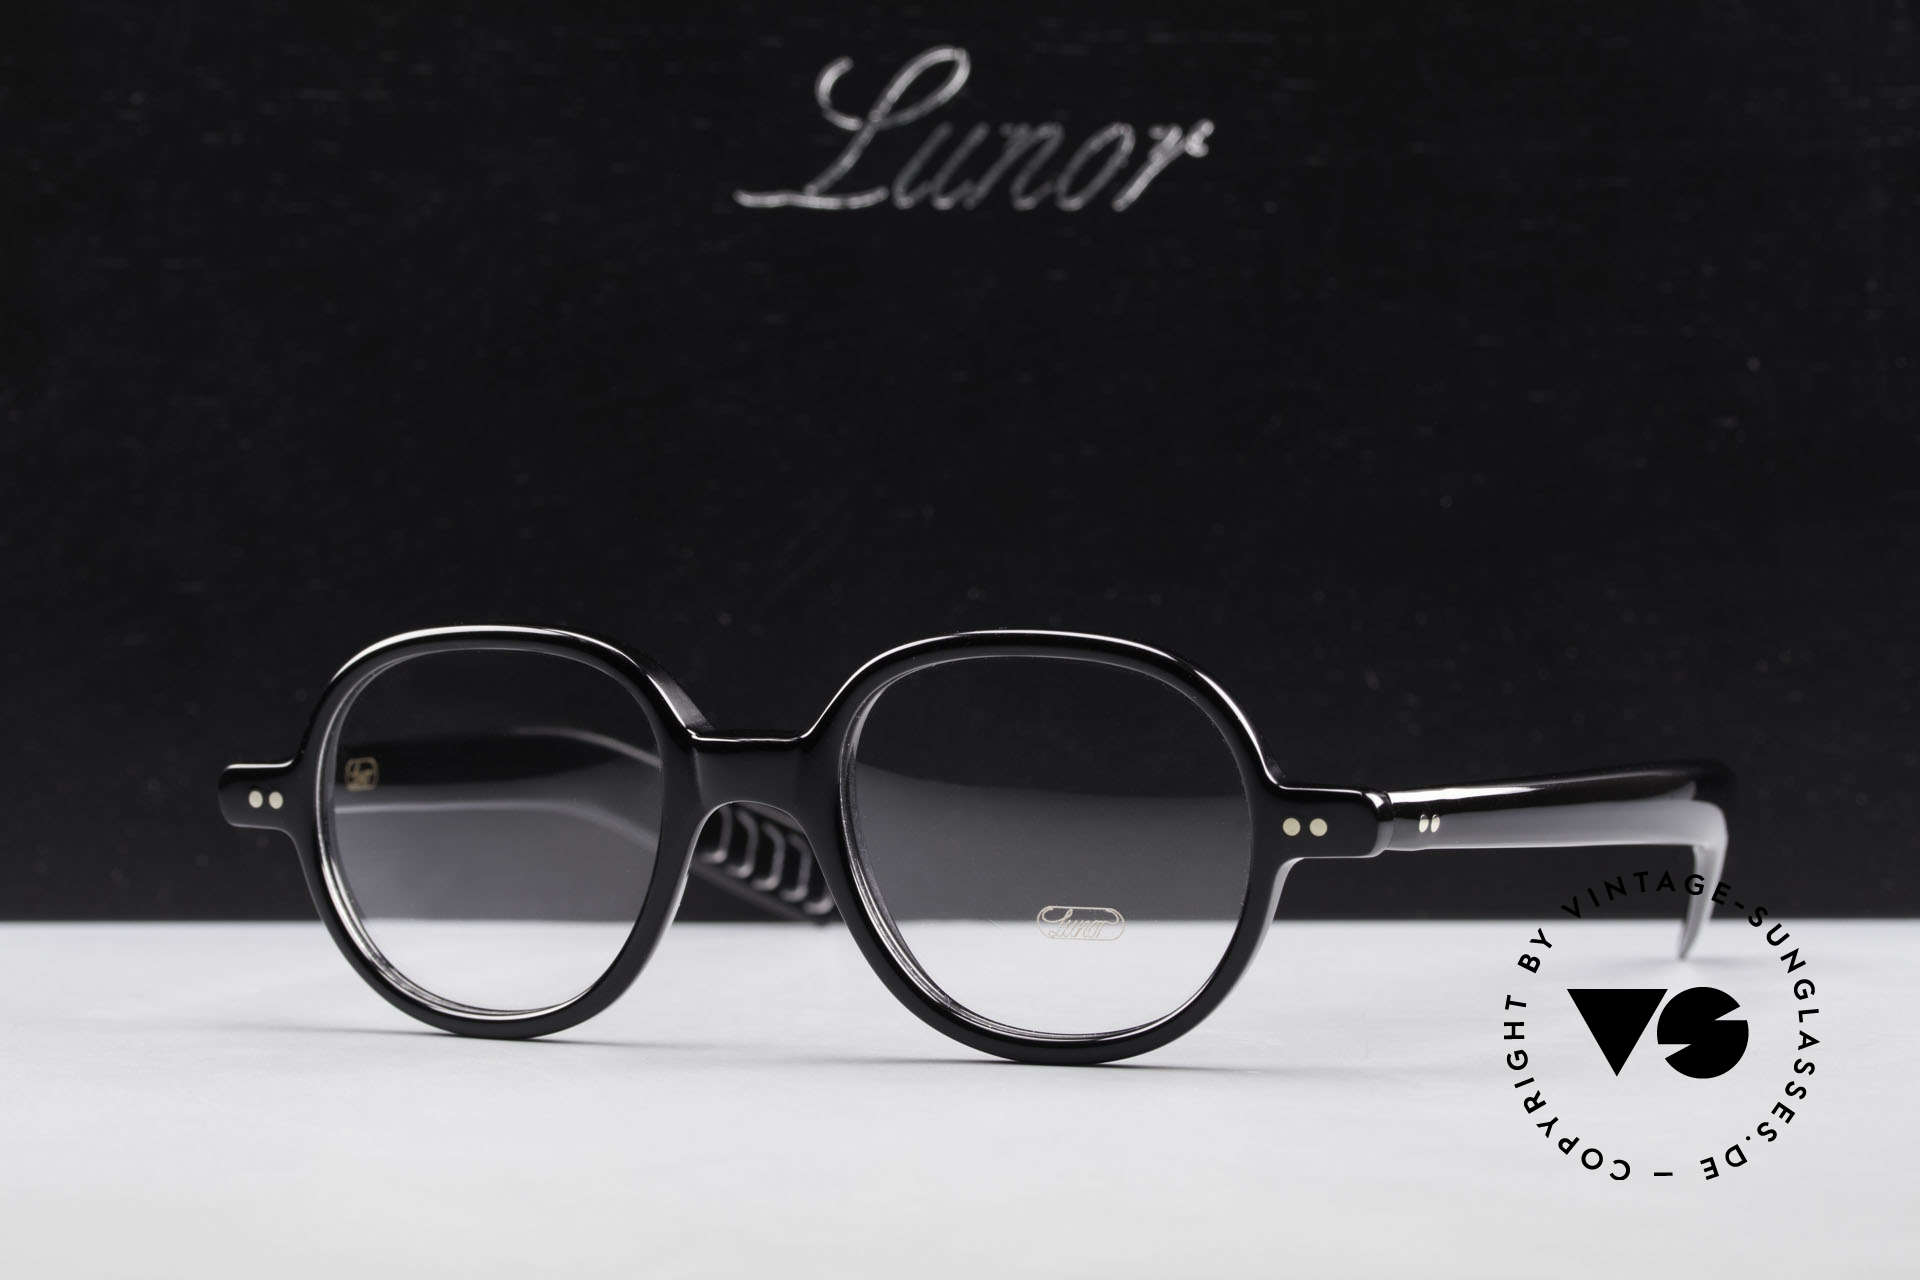 Lunor A50 Runde Lunor Acetatbrille Panto, Größe: medium, Passend für Herren und Damen